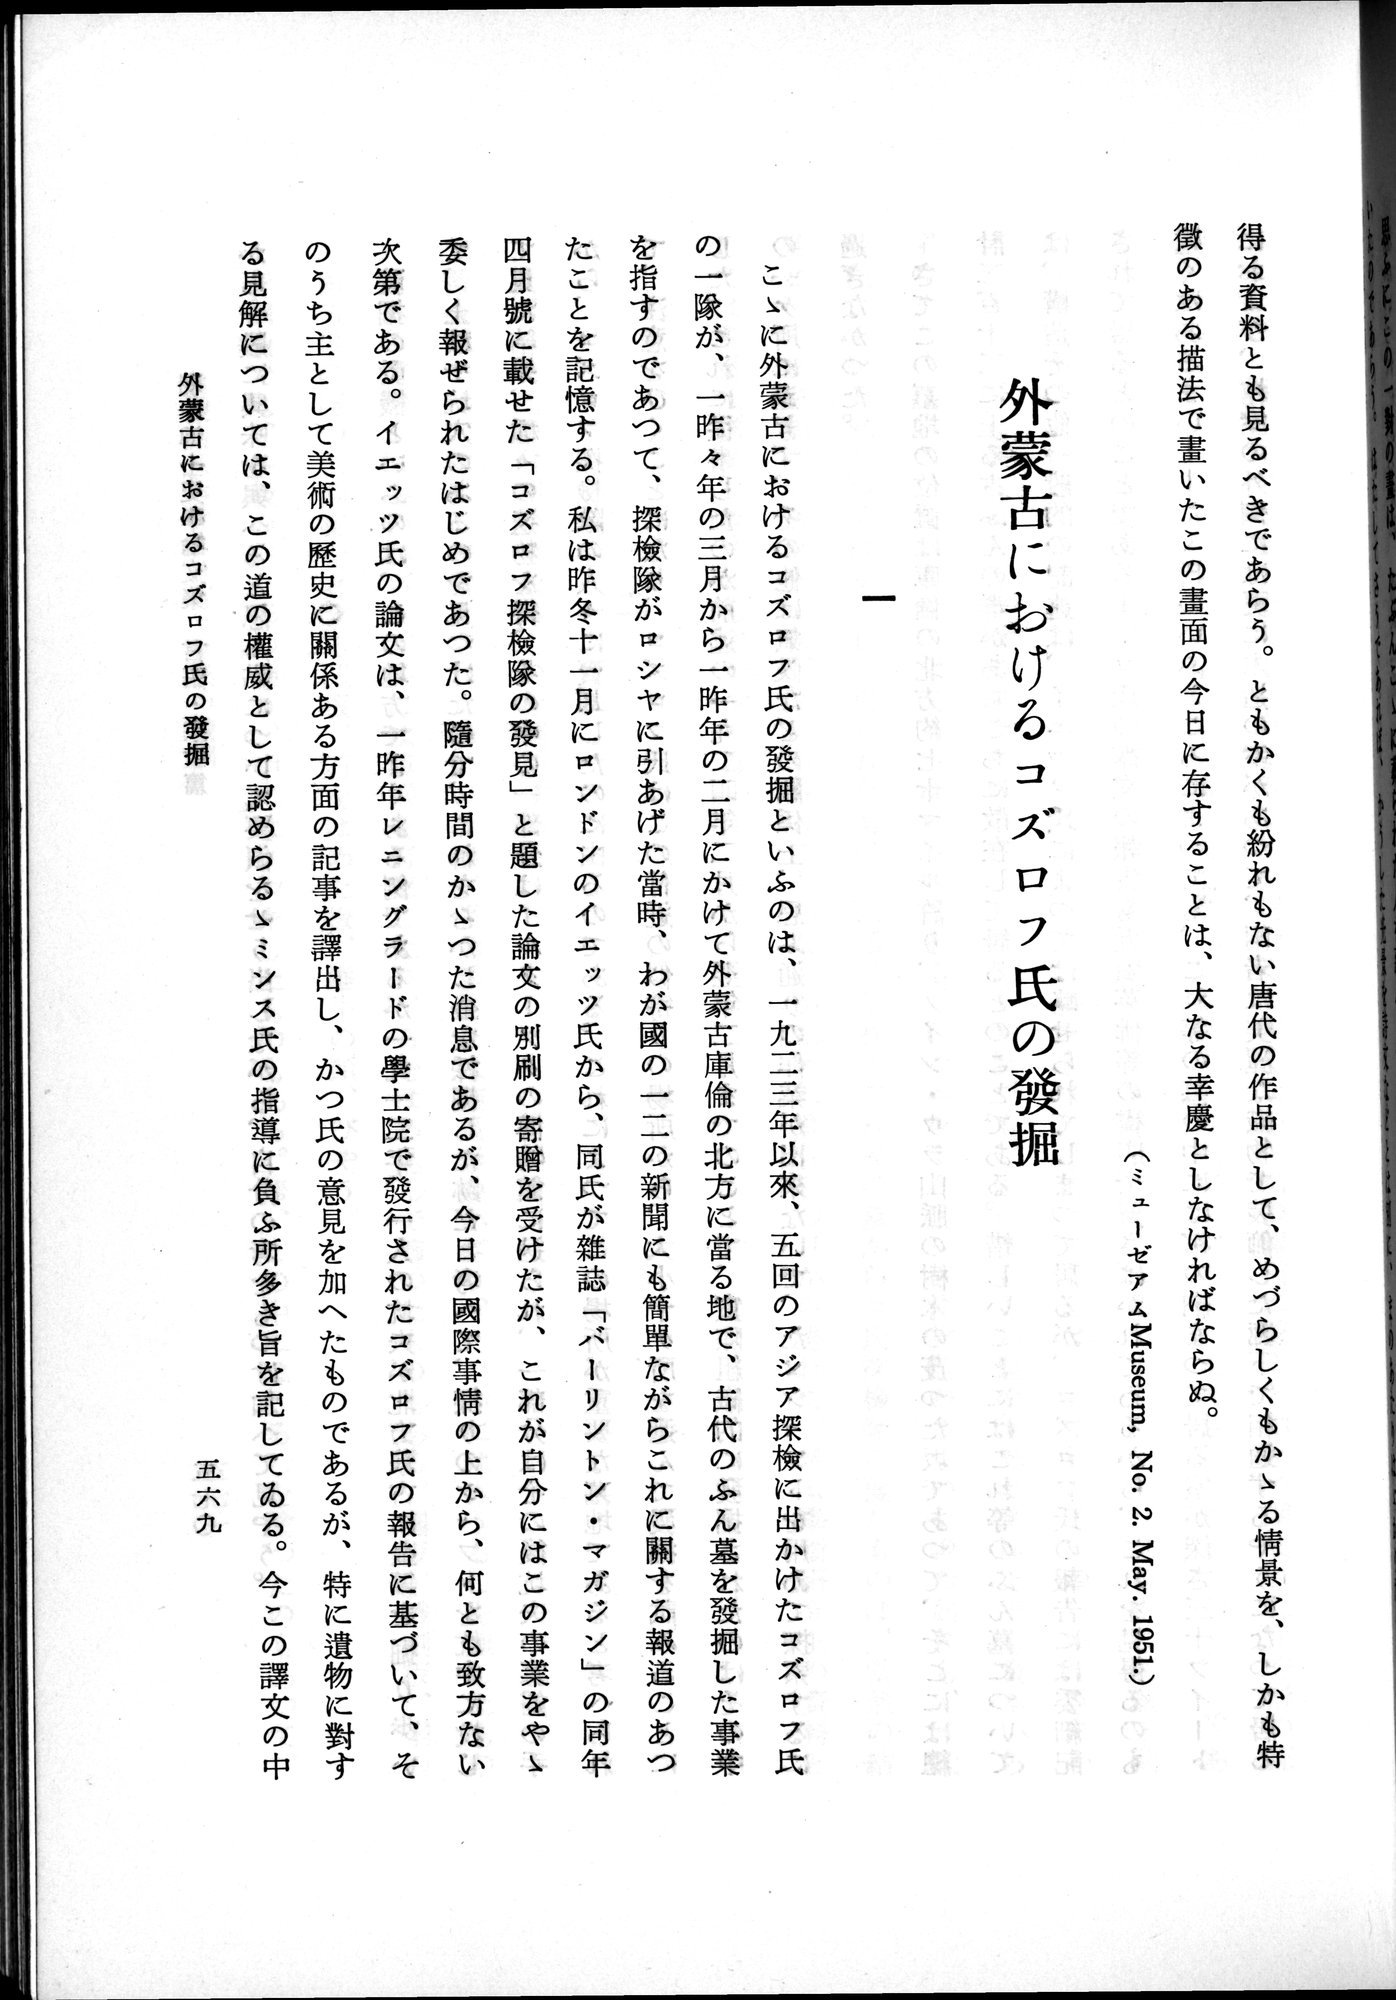 羽田博士史学論文集 : vol.2 / Page 631 (Grayscale High Resolution Image)